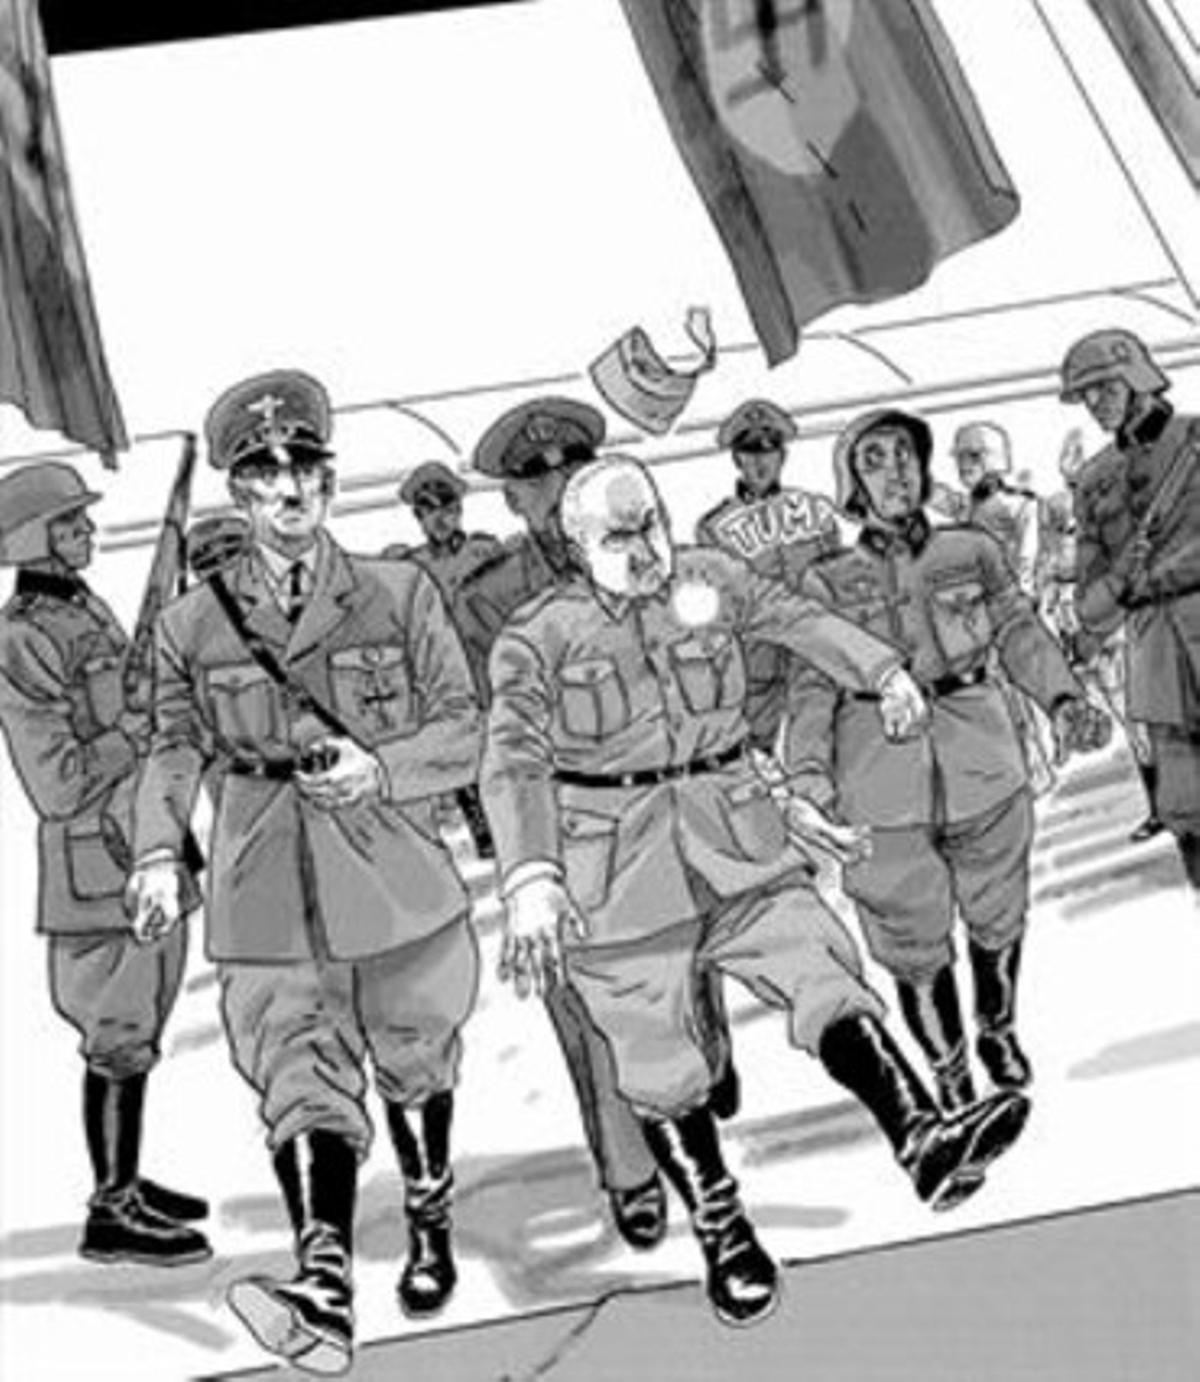 DE LA POSTGUERRA AL SEGLE XXI 3 Còmics originals amb soldats nord-americans a la portada, que a les ’Nuevas Hazañas bélicas’ es converteixen en un feixista i un milicià.